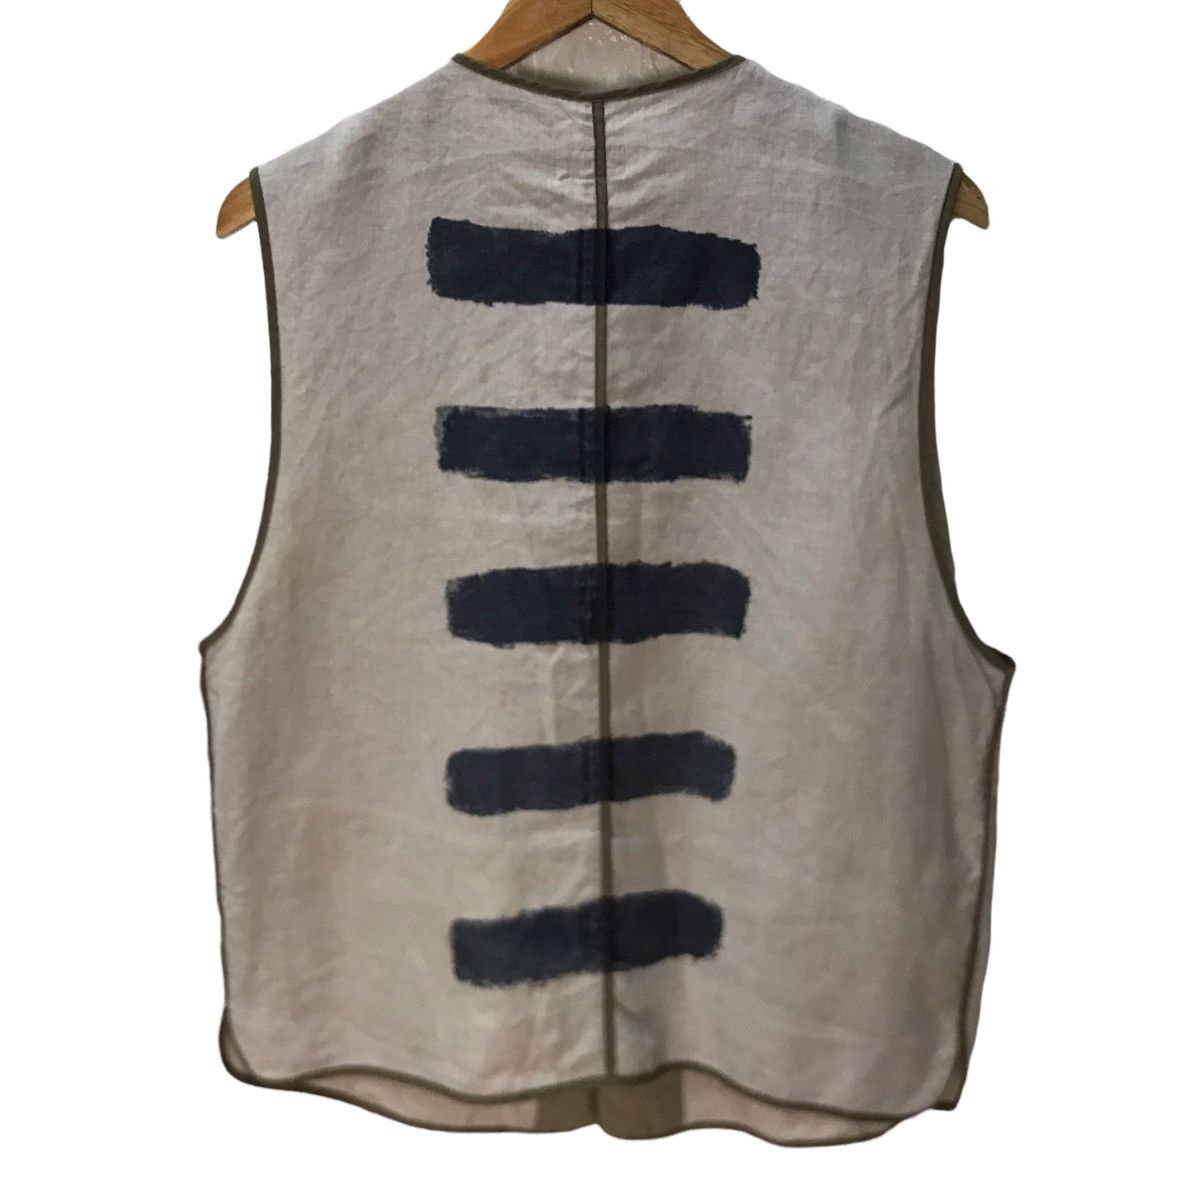 Paul smith indigo hand paint vest jacket - 2